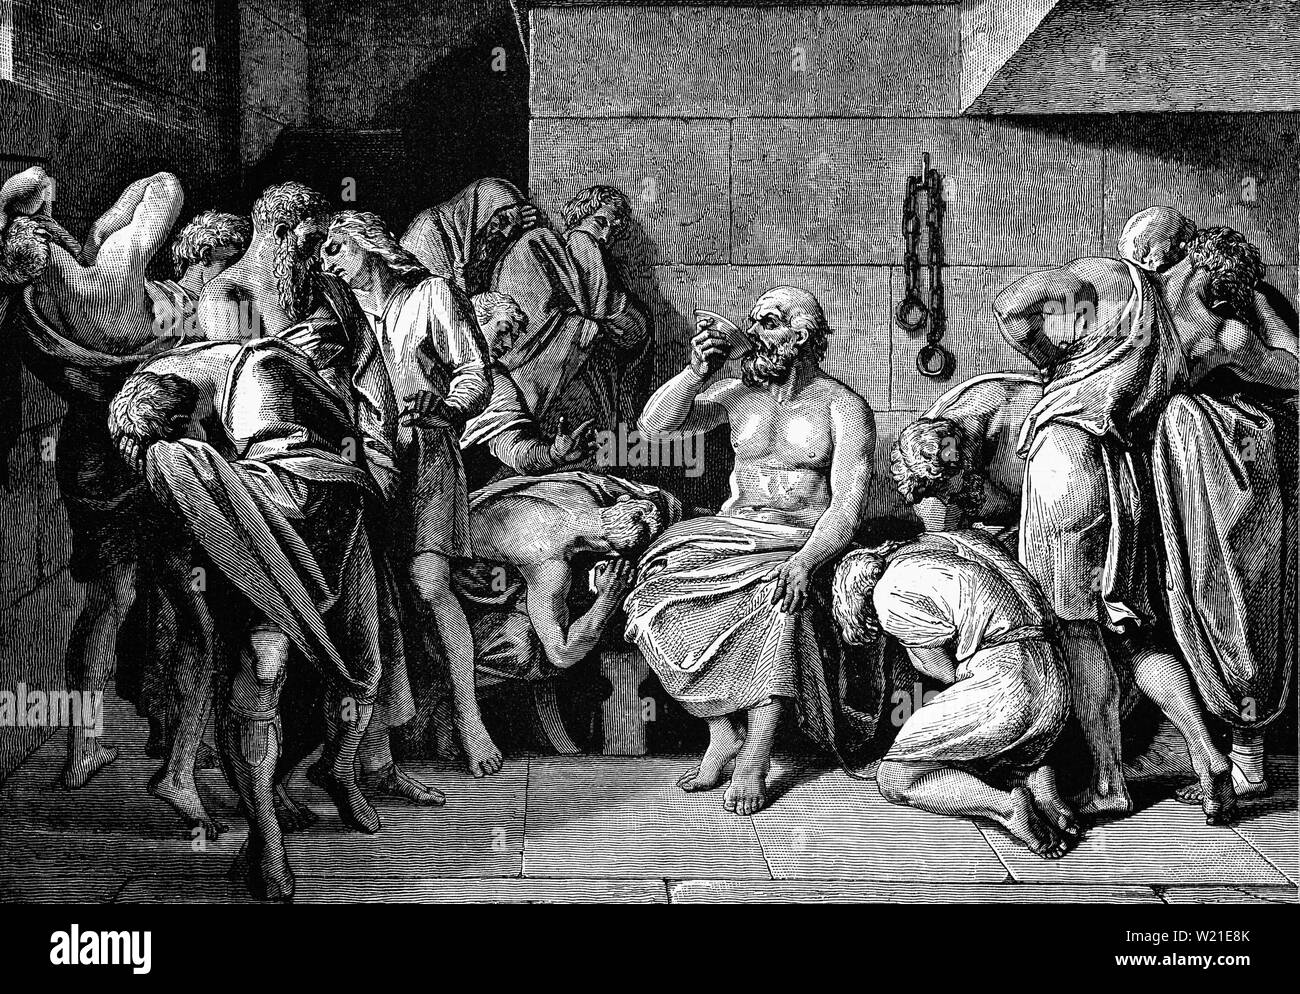 La muerte de Sócrates (470 - 399 A.C.), el Griego clásico (ateniense)  filósofo acreditado como uno de los fundadores de la filosofía occidental,  y el primer filósofo moral de la tradición ética